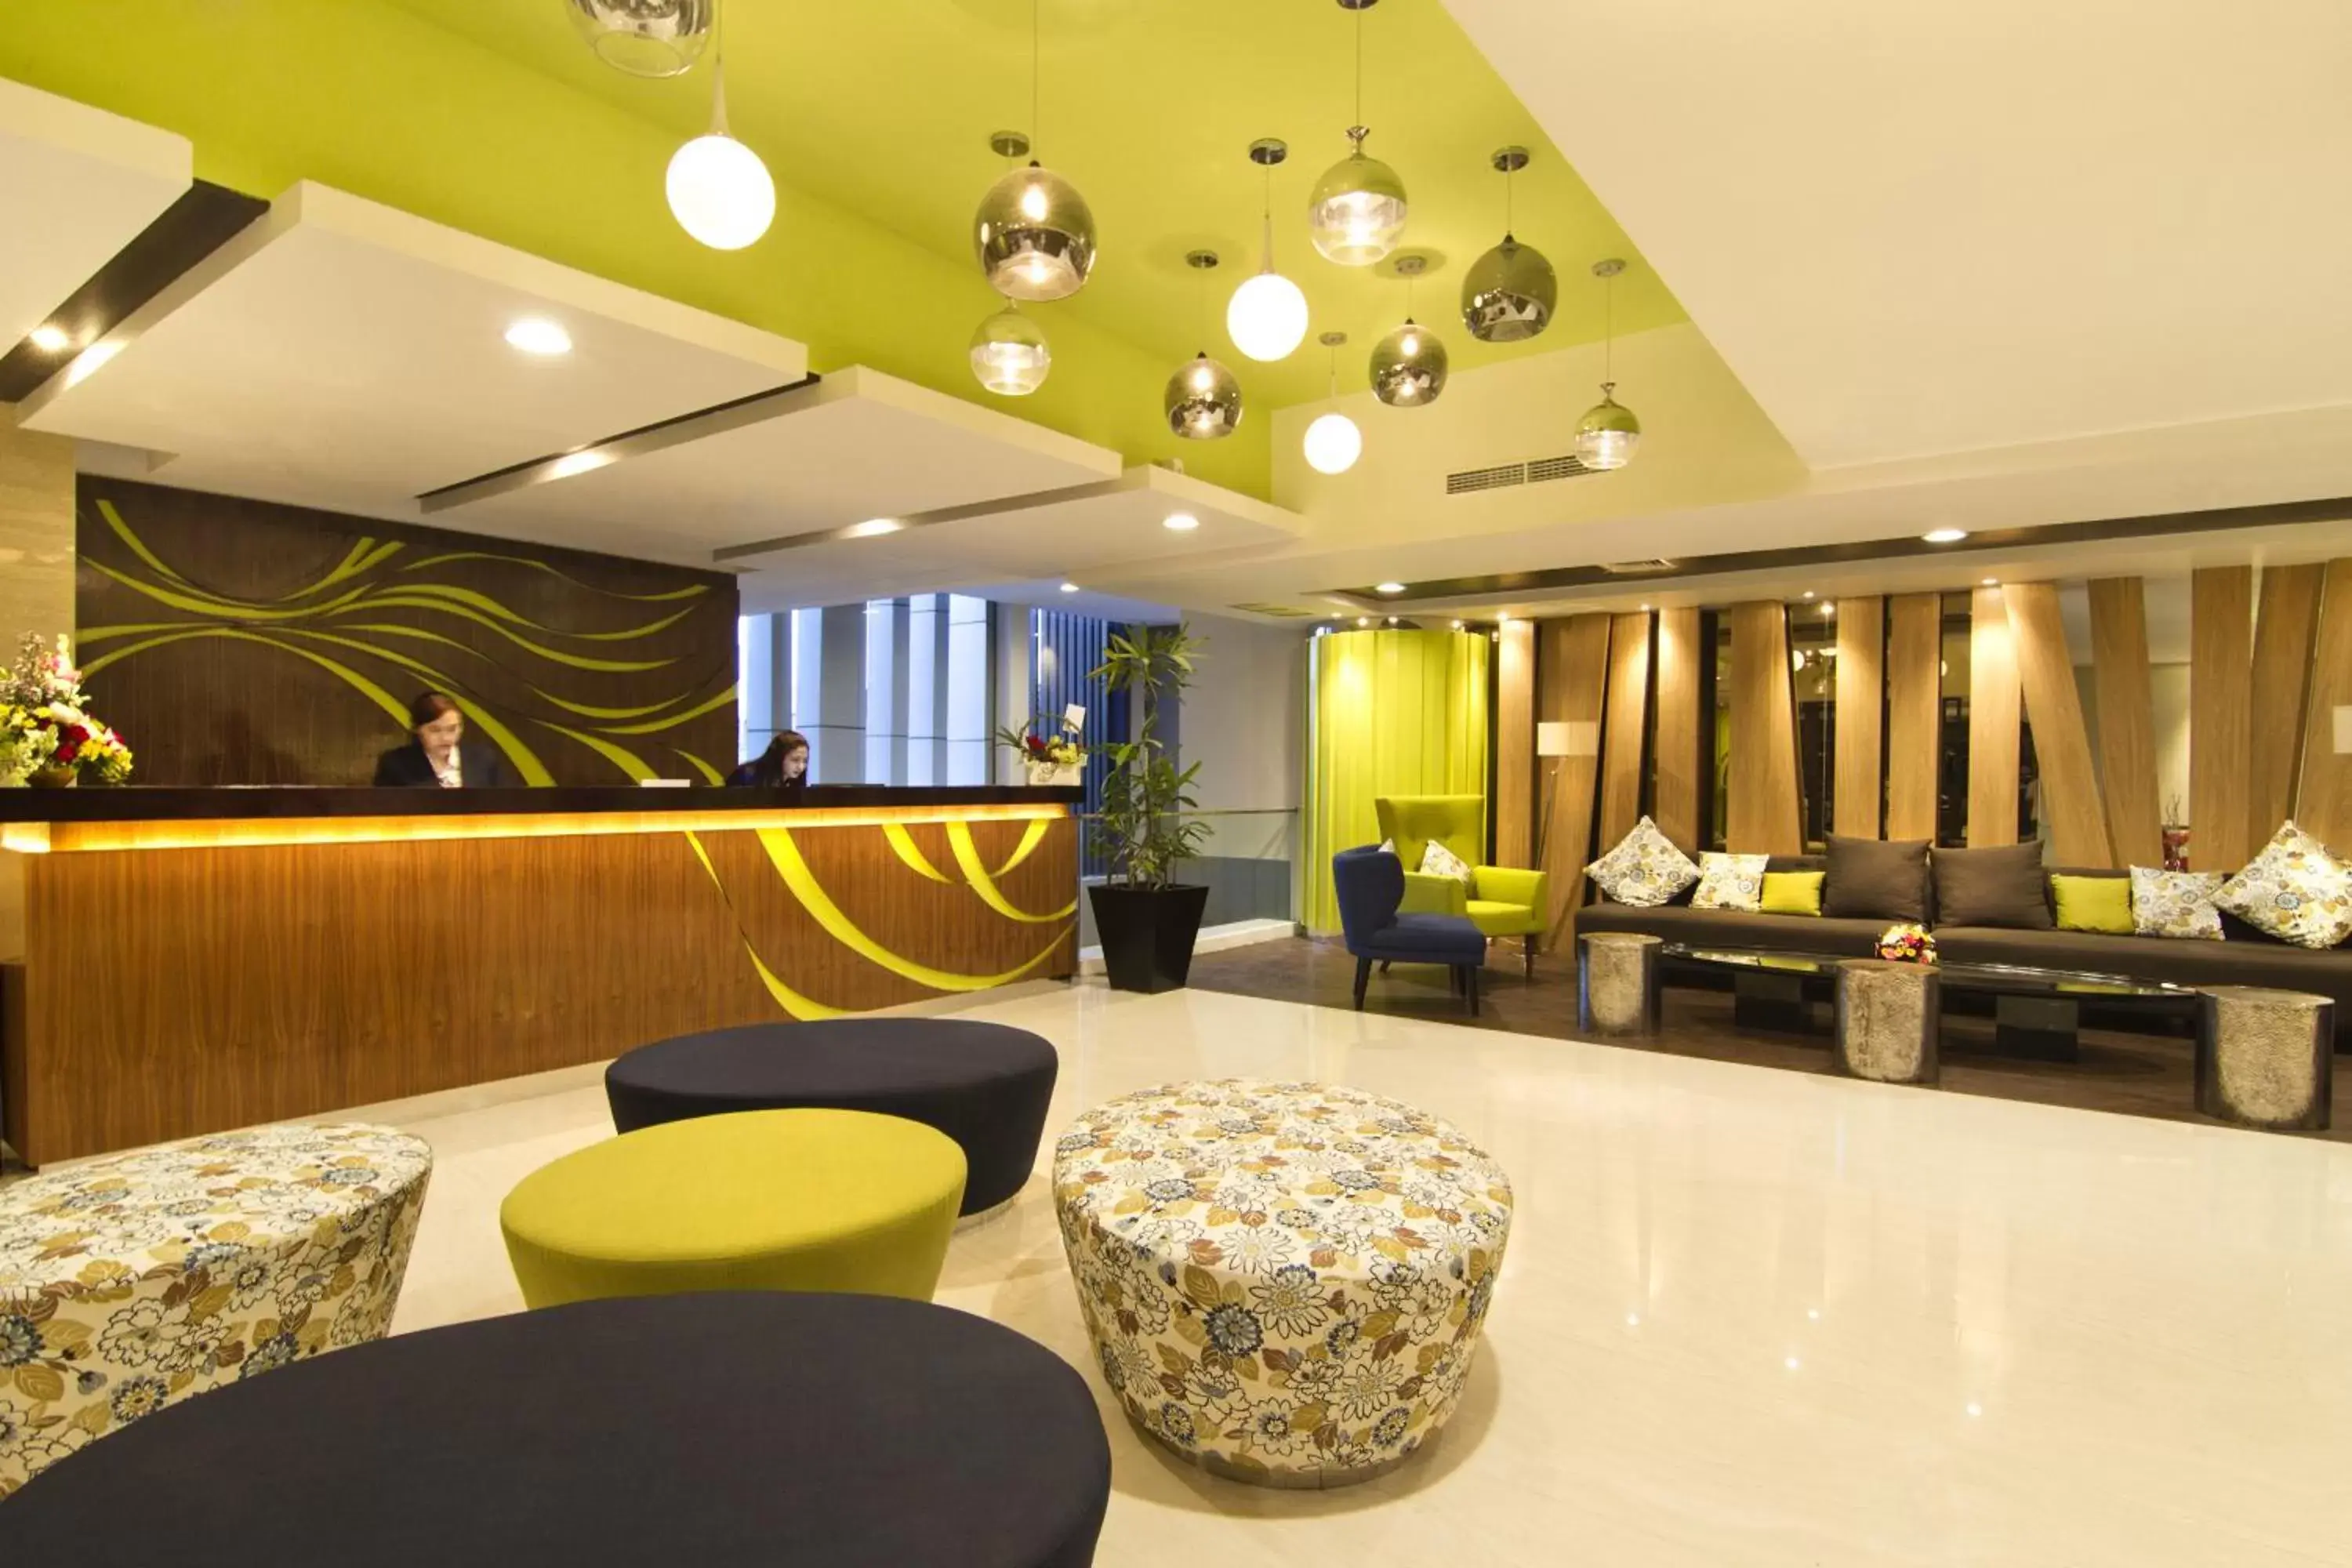 Lobby or reception, Lobby/Reception in Bonnet Hotel Surabaya